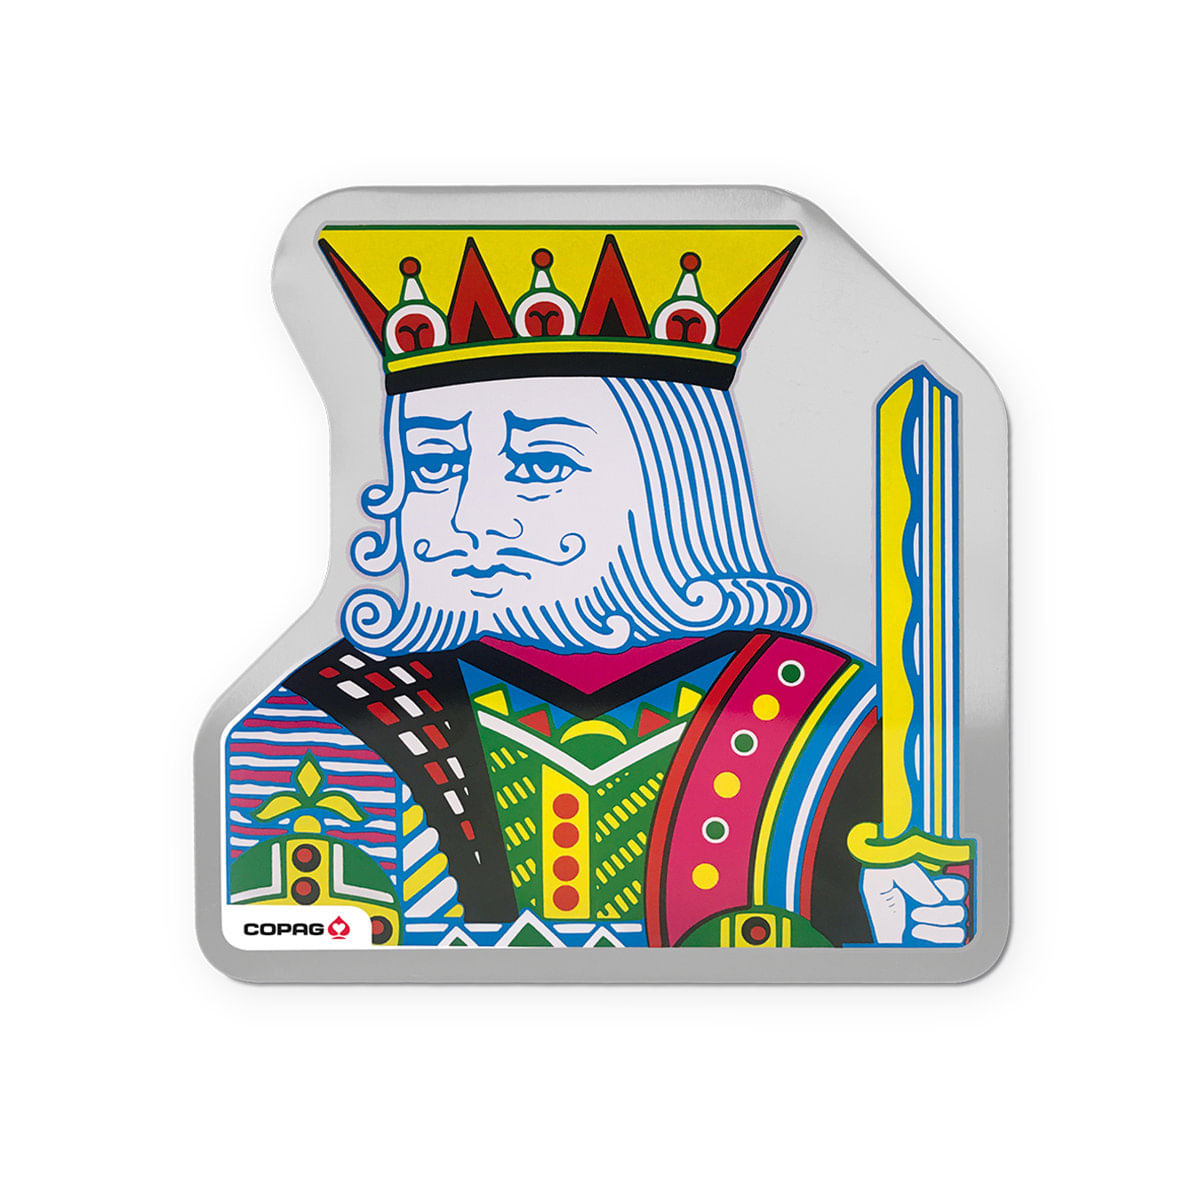 Rei nos Cantos - Jogo de baralho #cardgame #baralho #cartas #jogosdeta